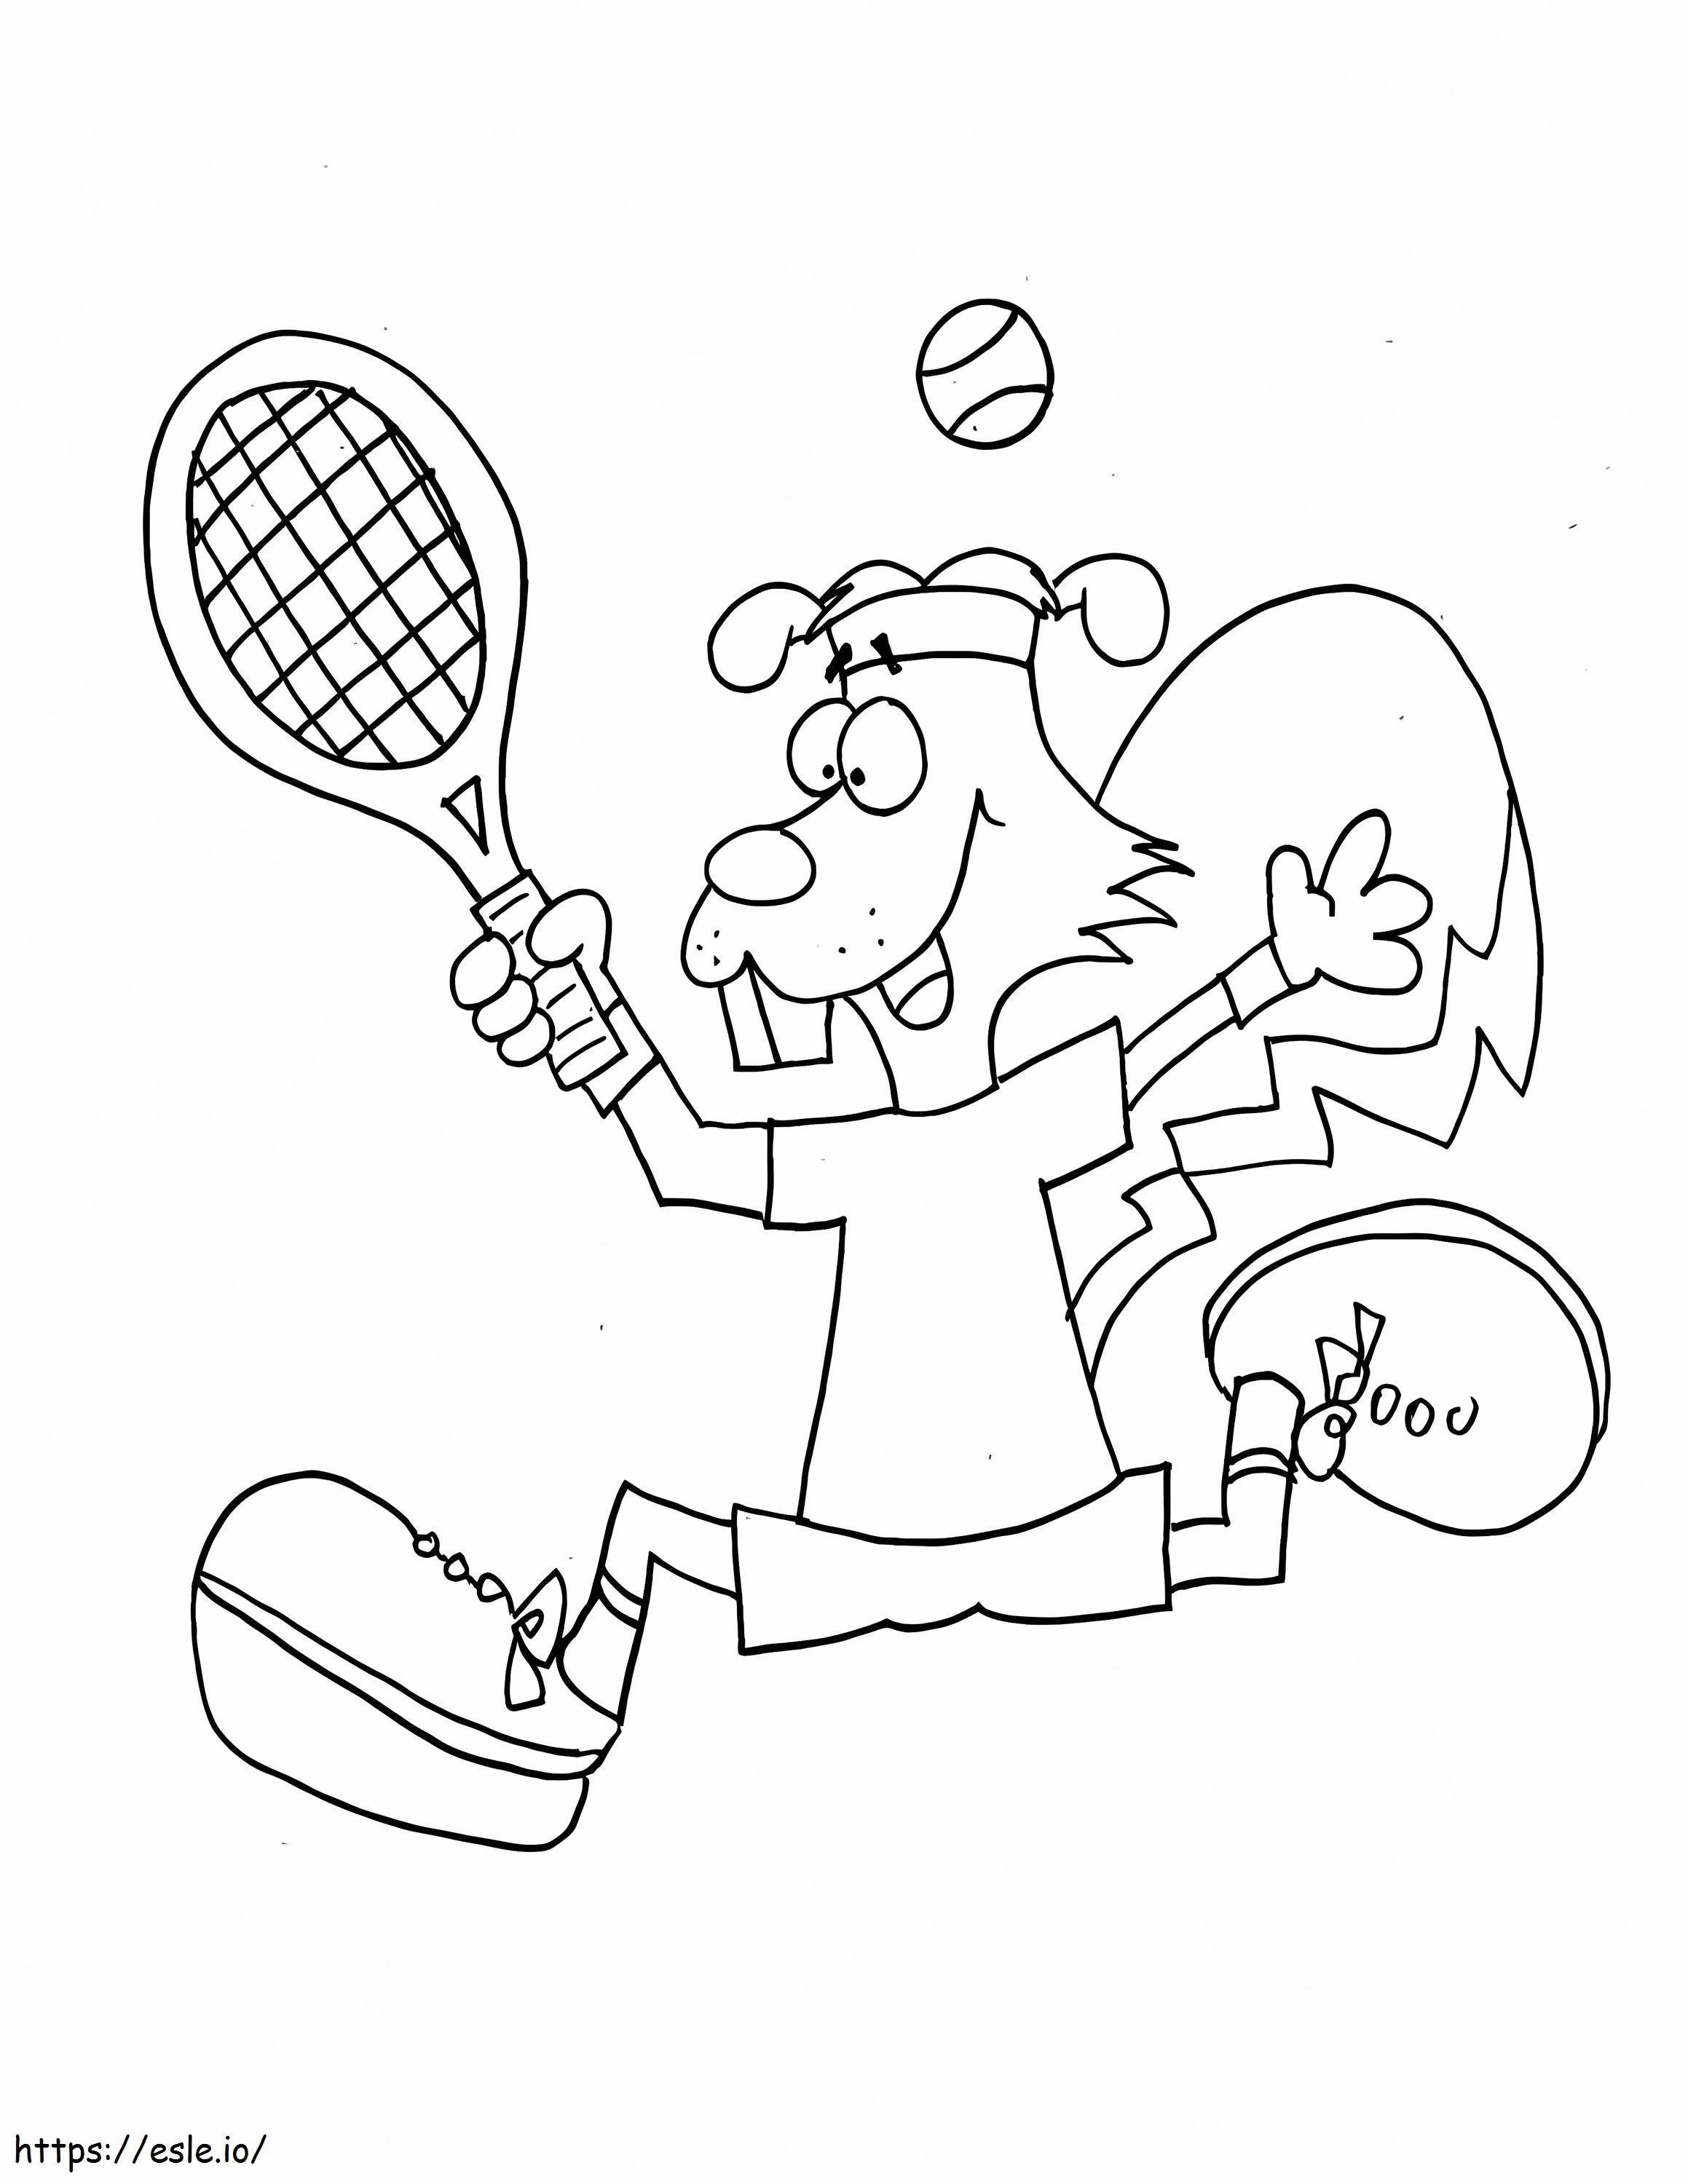 Veveriță care joacă tenis de colorat